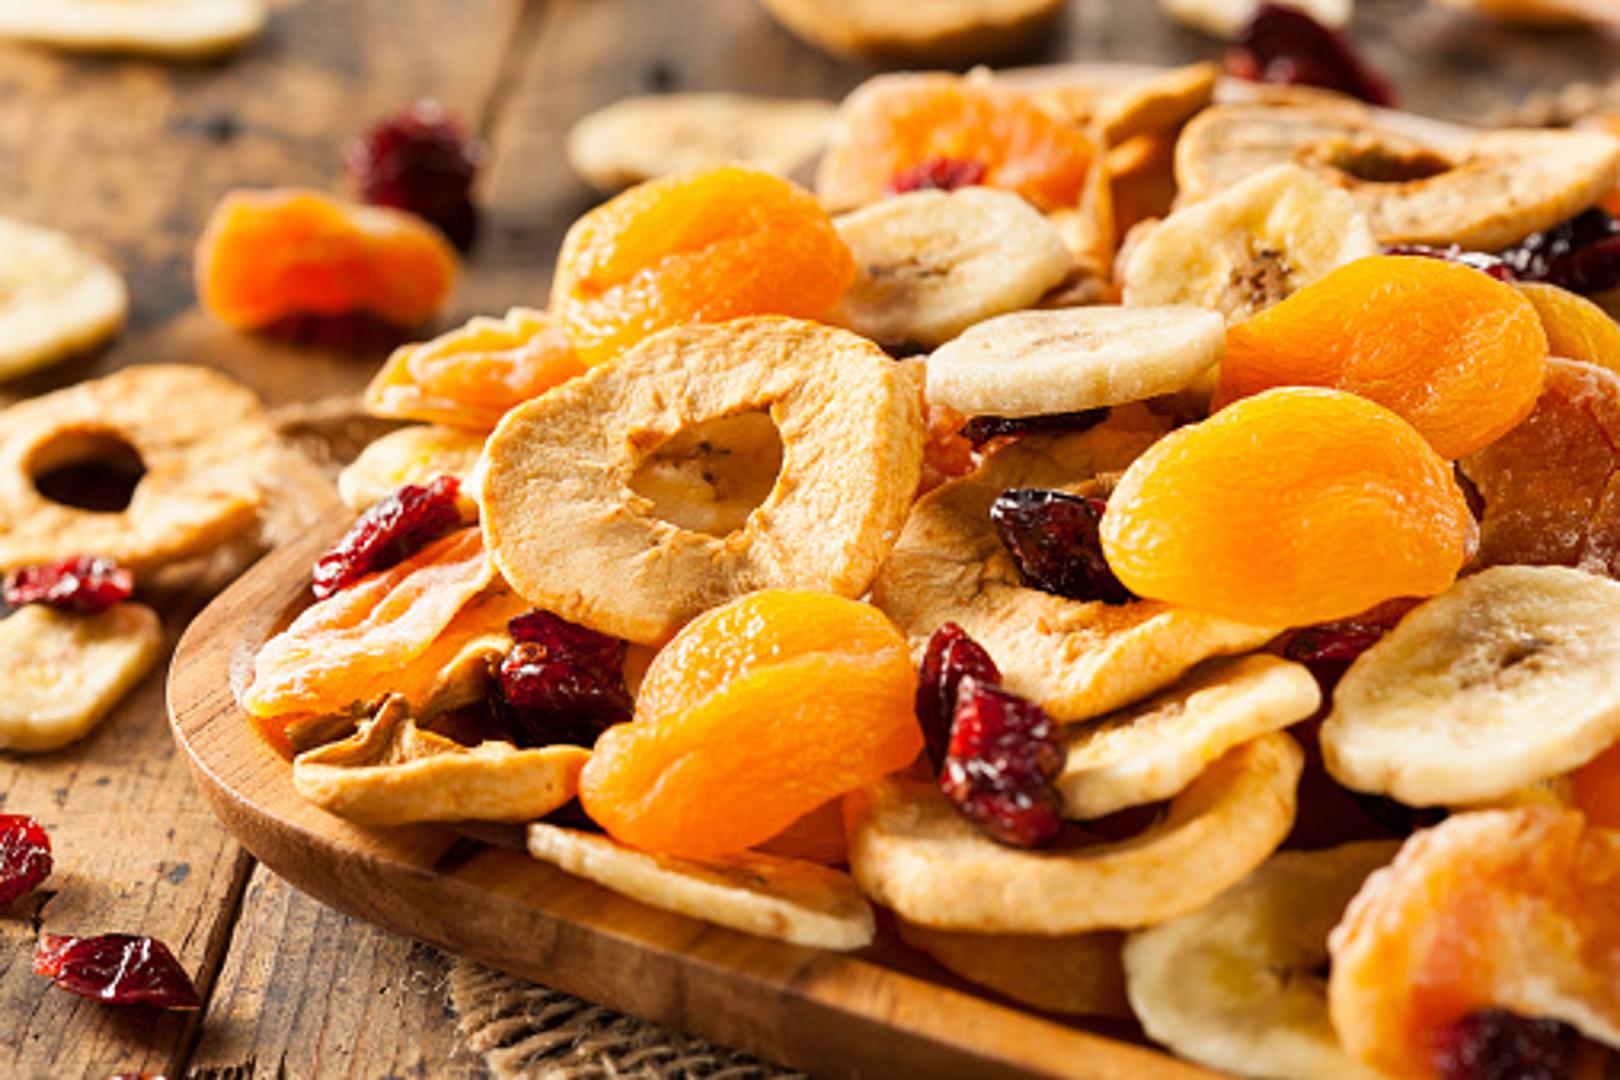 Suho voće - Suho voće obiluje vlaknima, vitaminima i drugim esencijalnim hranjivim tvarima. Međutim, sušeno voće sadrži veću količinu šećera i kalorija od svježeg. 